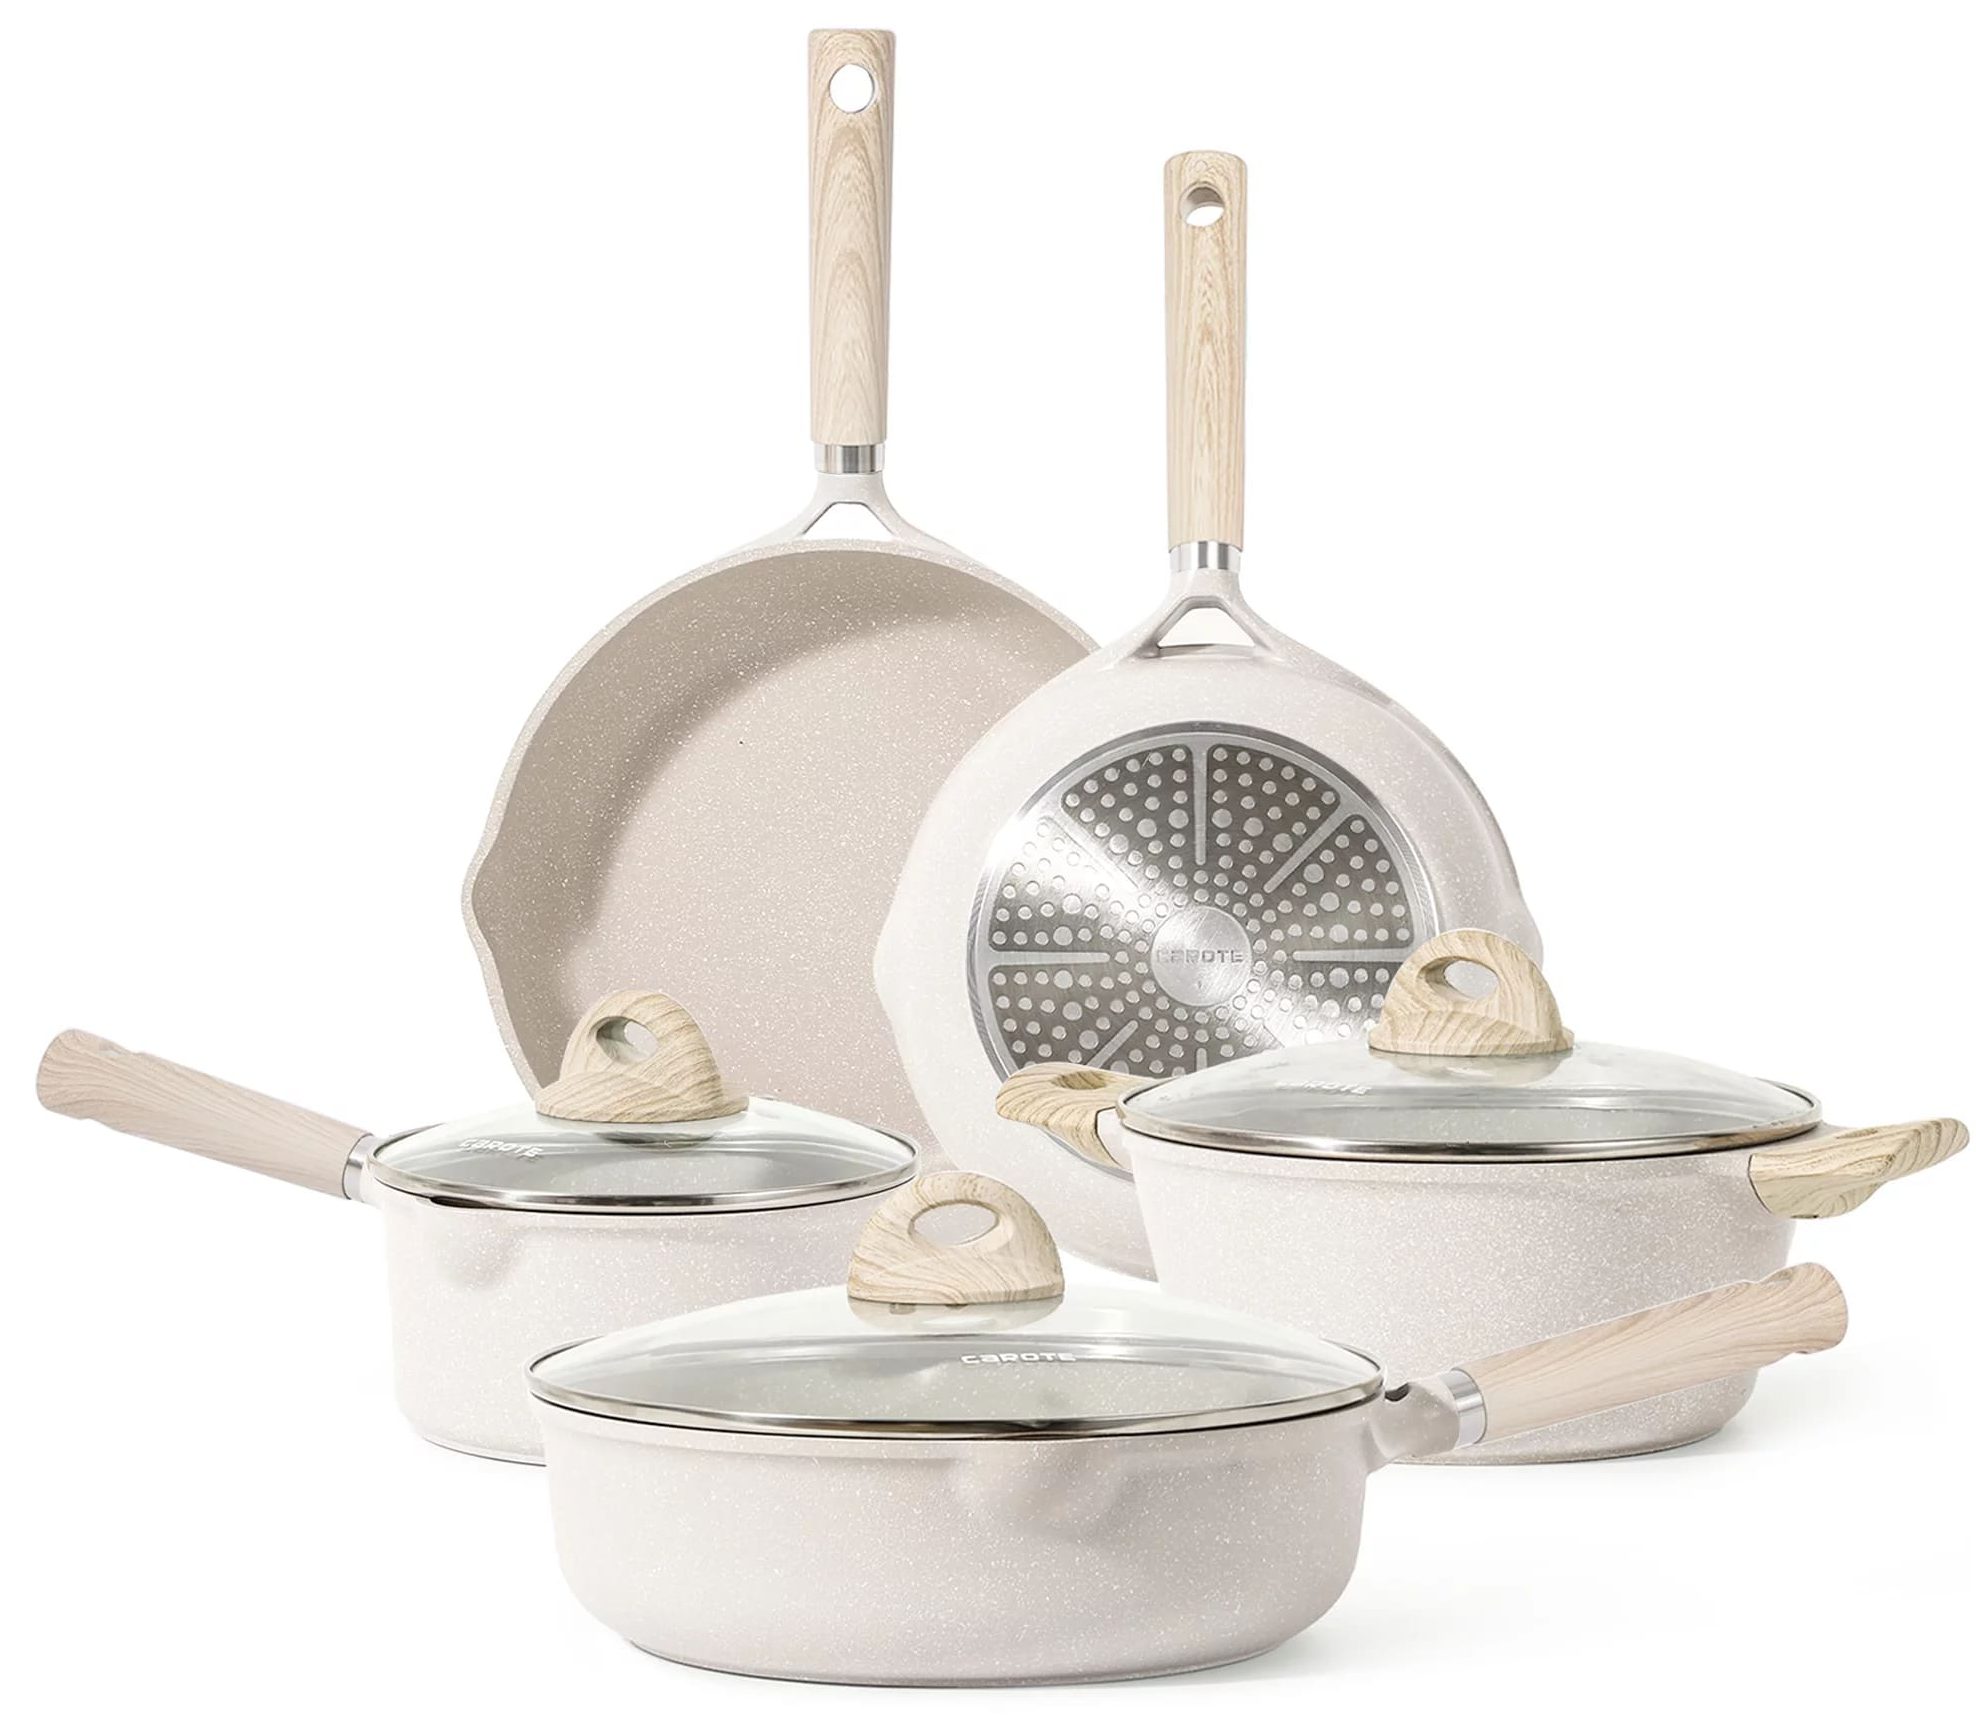 Walmart Carote Nonstick Pots and Pans Set, 8 Pcs Induction Kitchen Cookware Sets